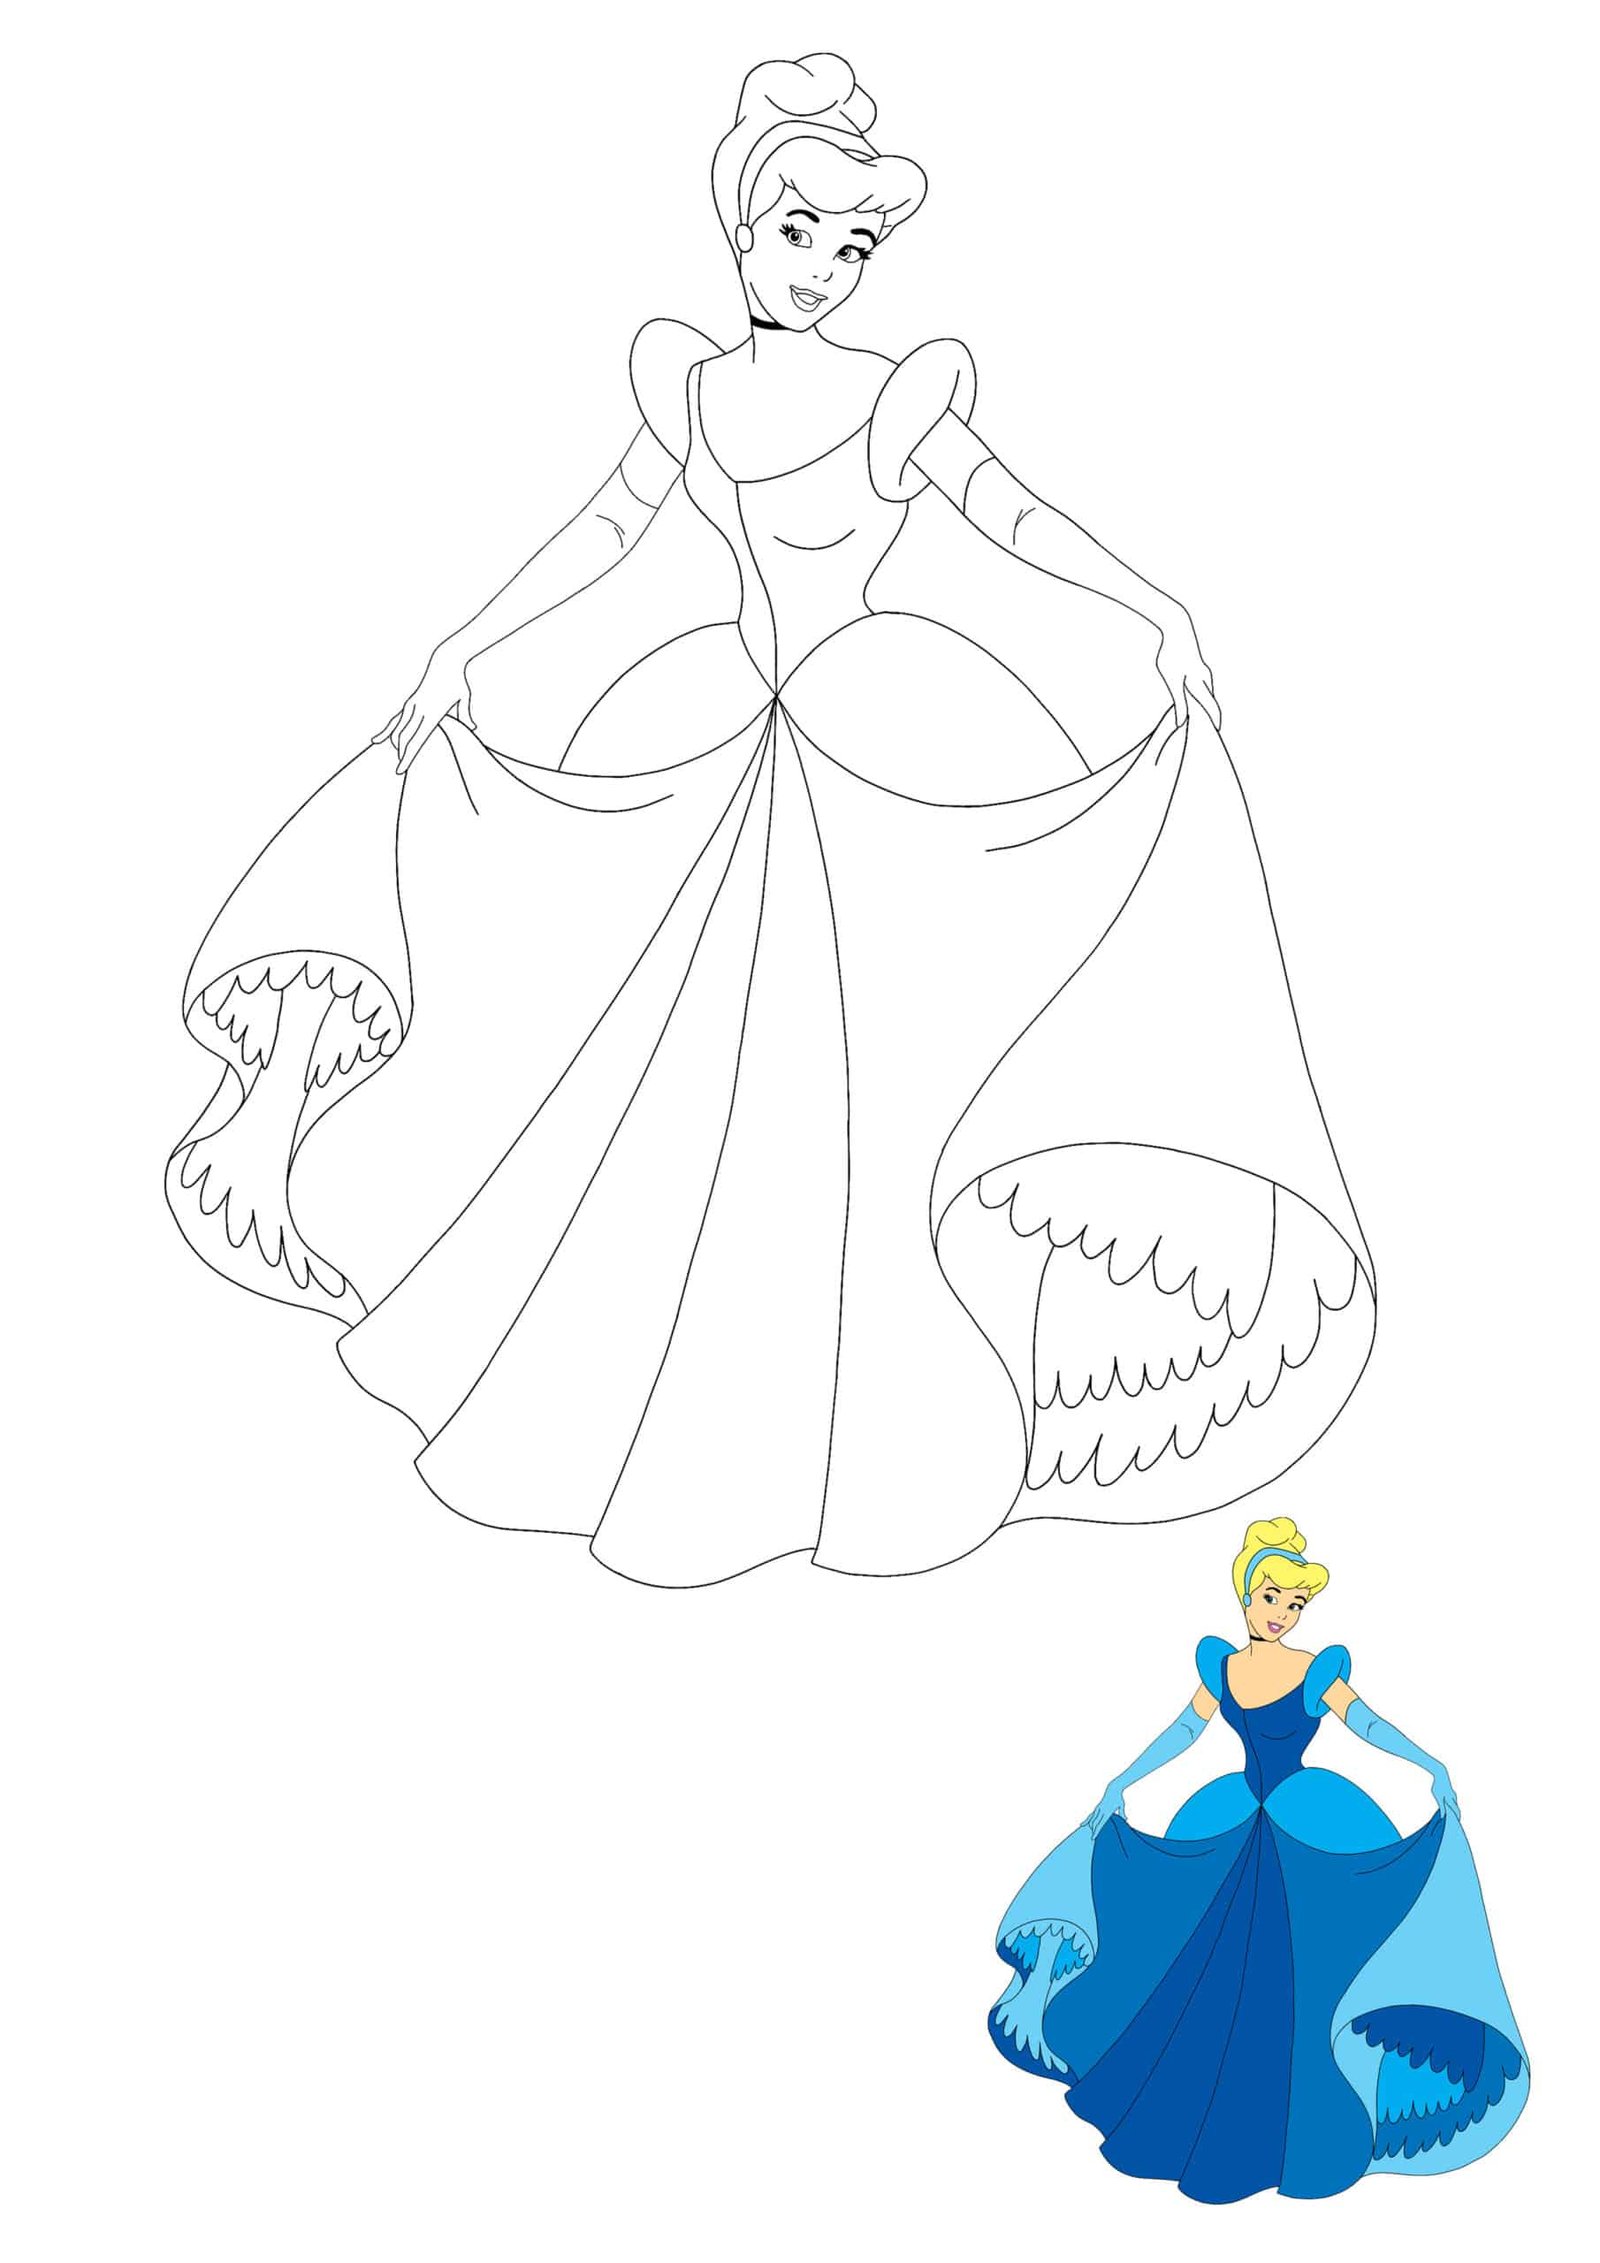 Disney princess cinderella coloring pages